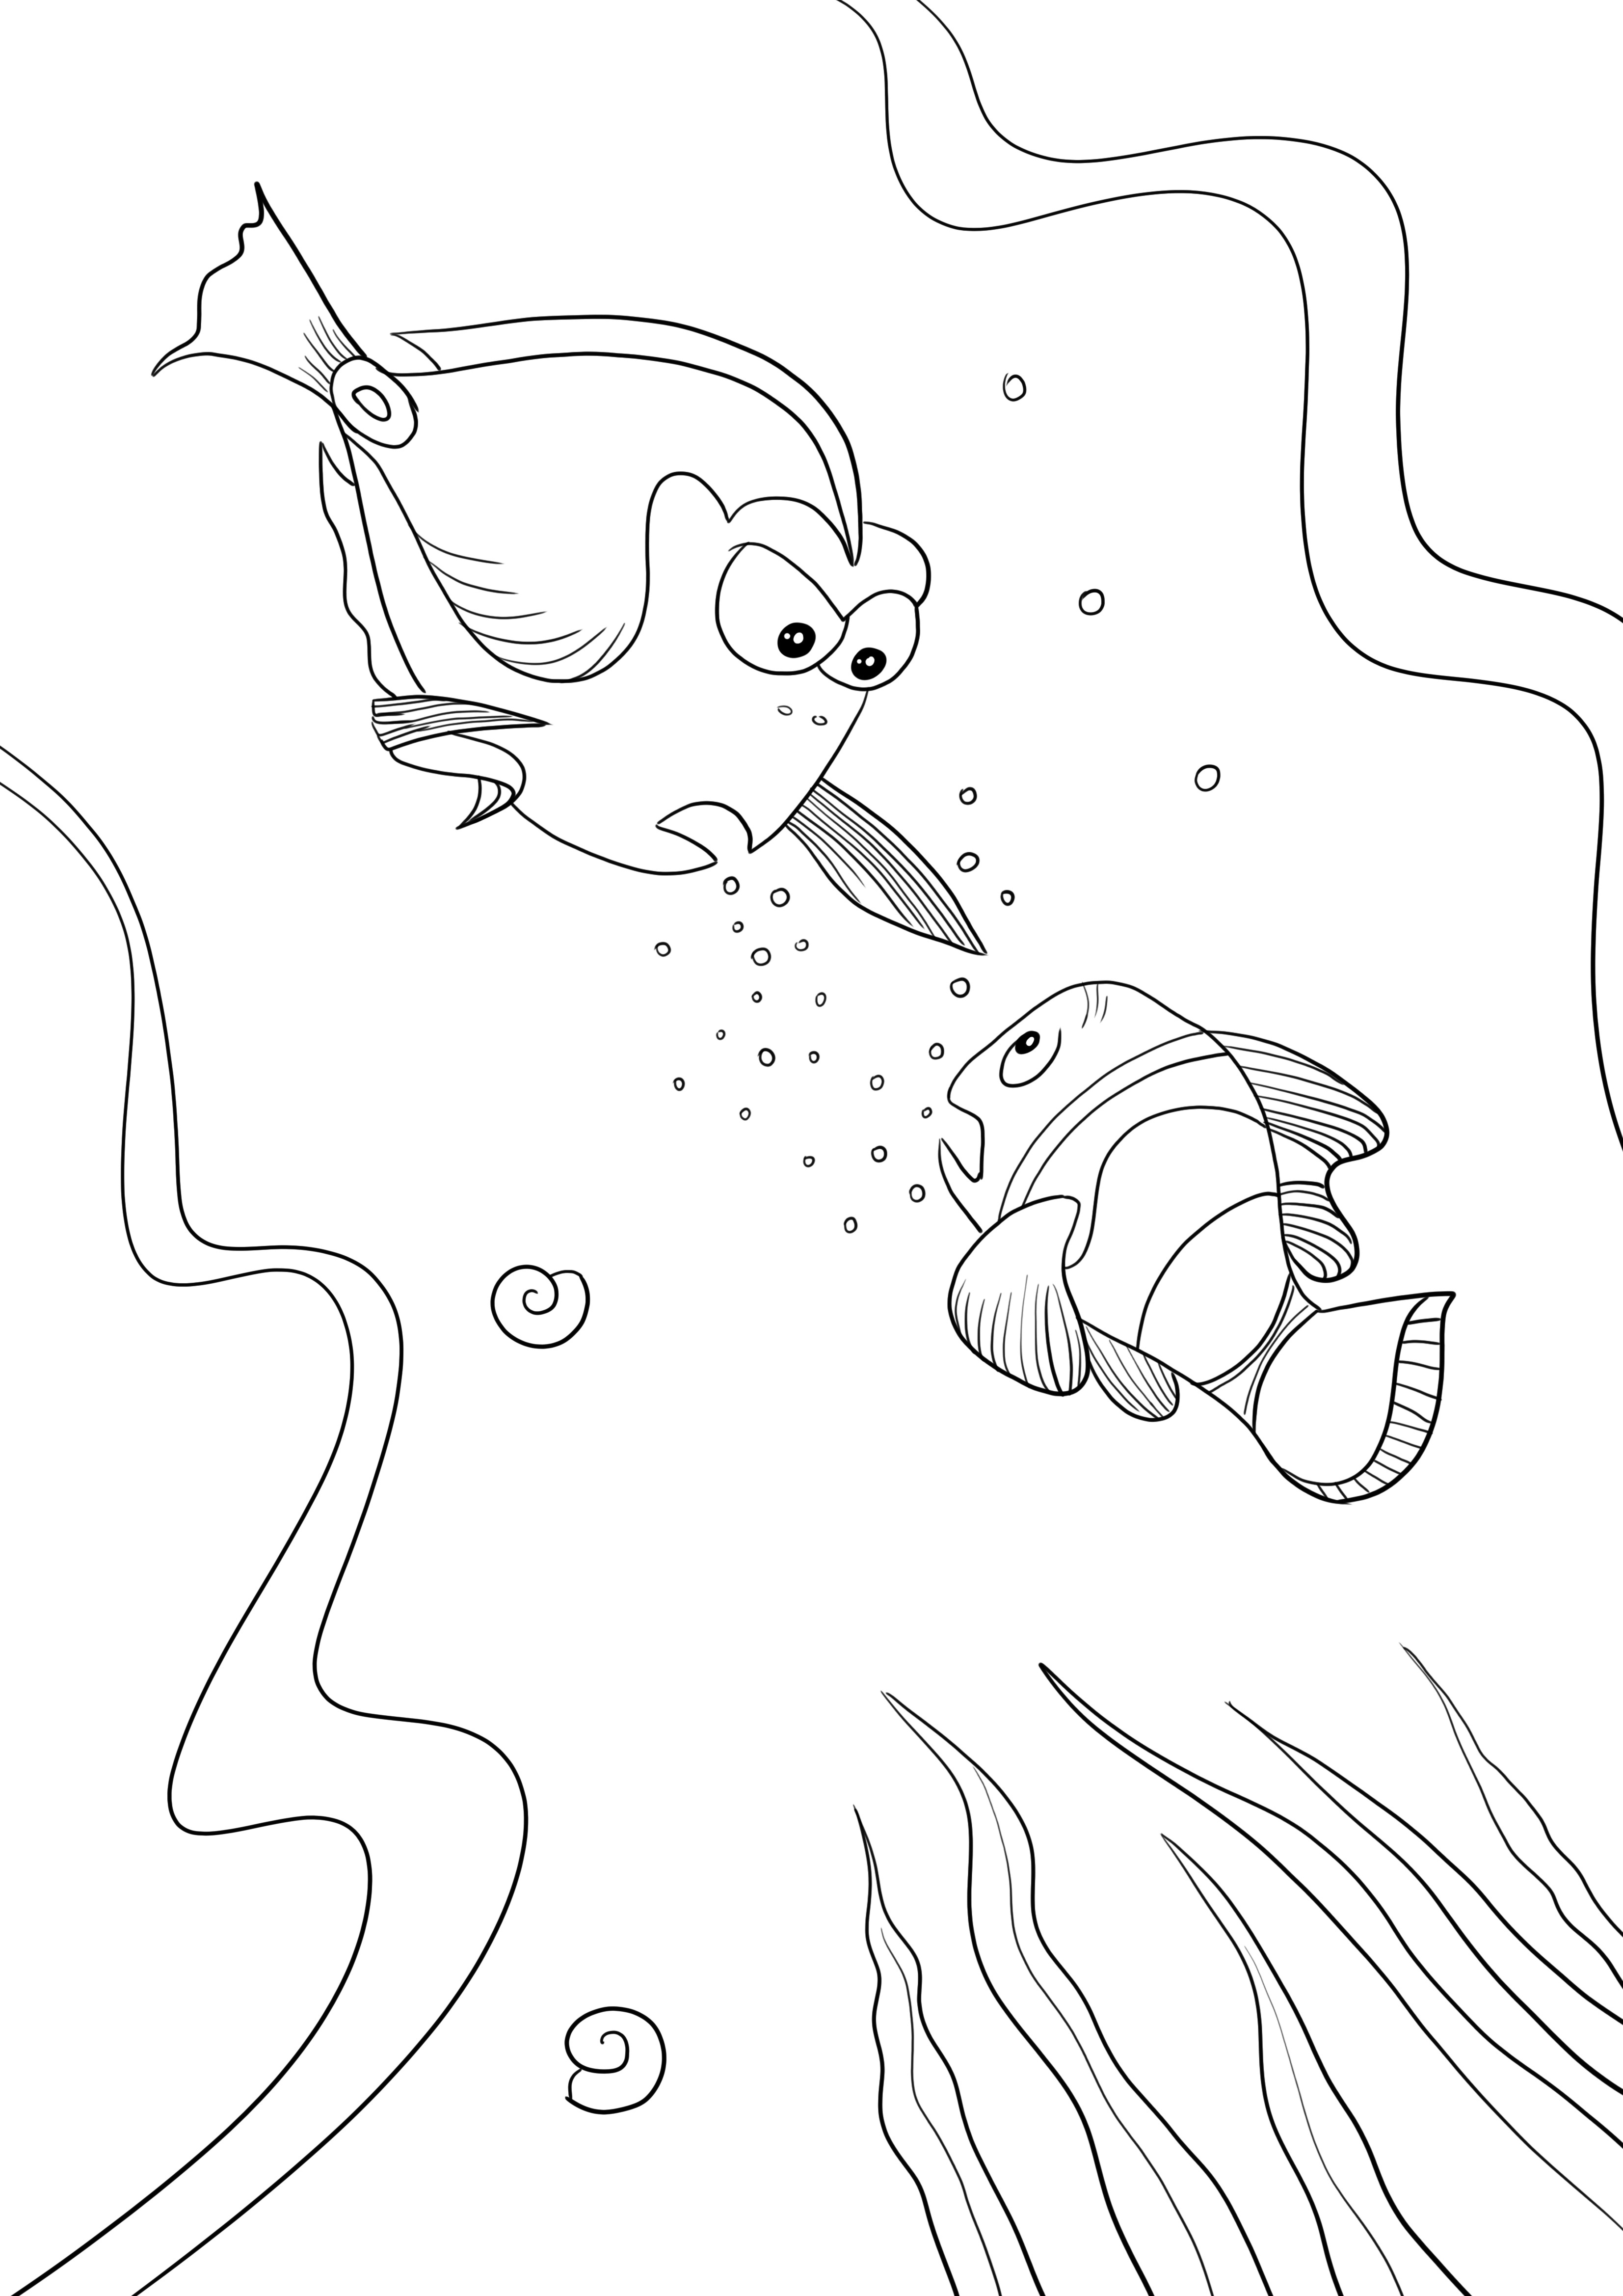 Dory de Procurando Nemo imagem imprimível para colorir para crianças